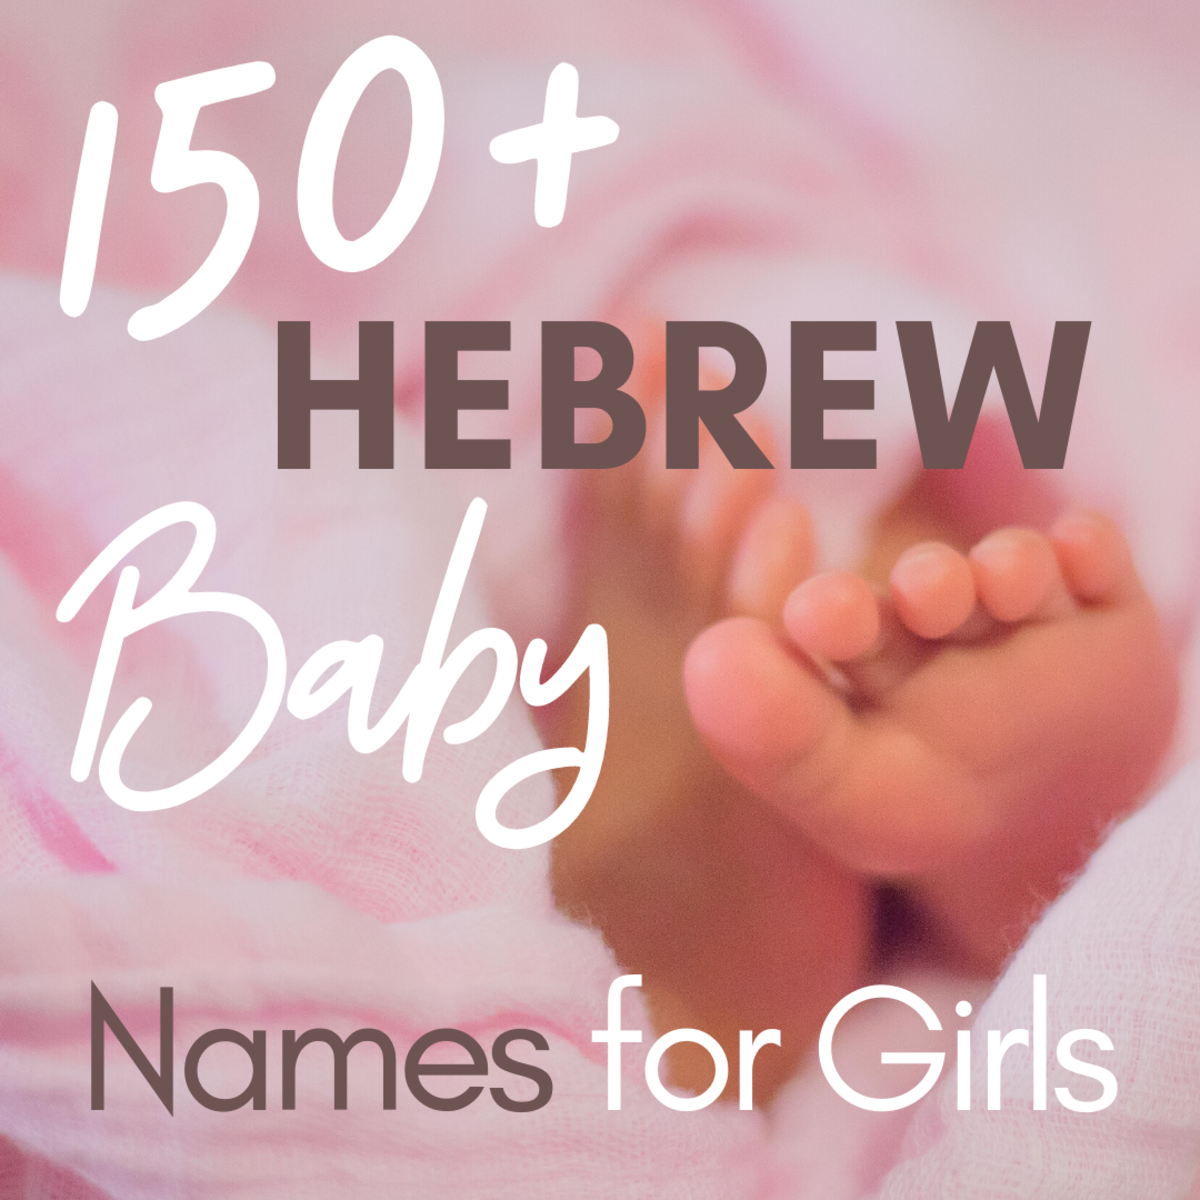 Hebreeuwse namen voor meisjes en hun betekenis